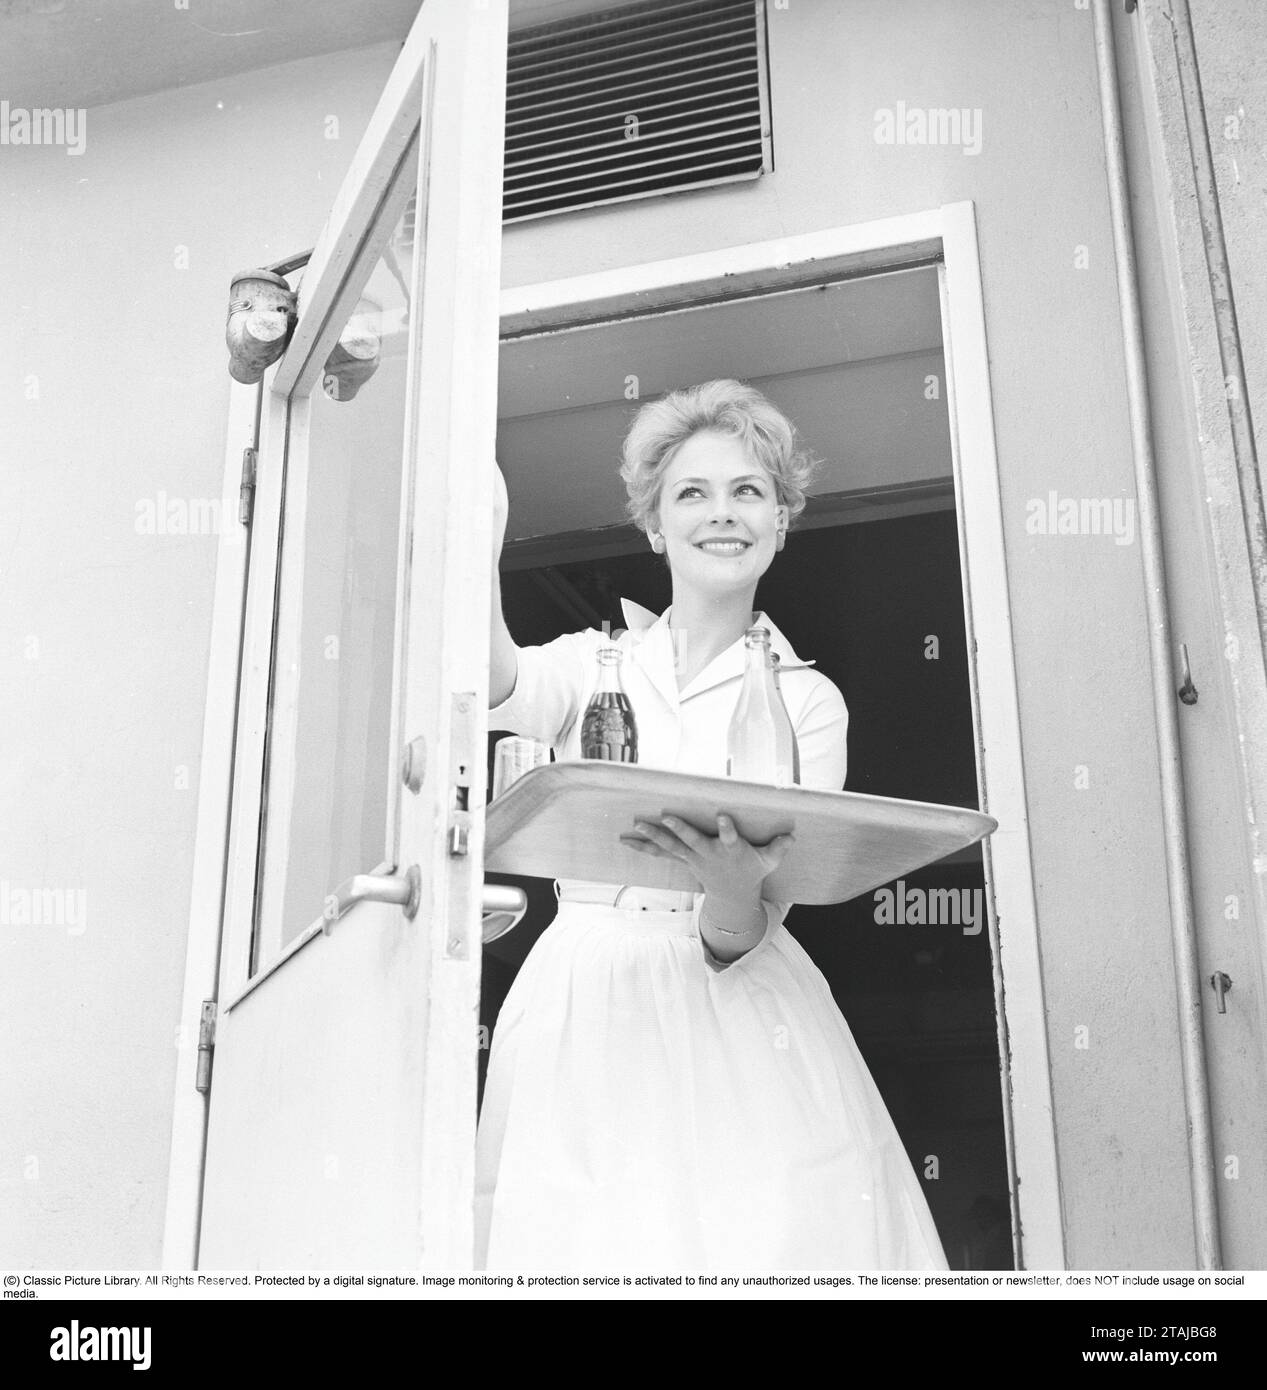 Une jeune femme travaille comme serveuse dans une pâtisserie et sort par la porte avec un plateau de boissons gazeuses. 1958 Banque D'Images